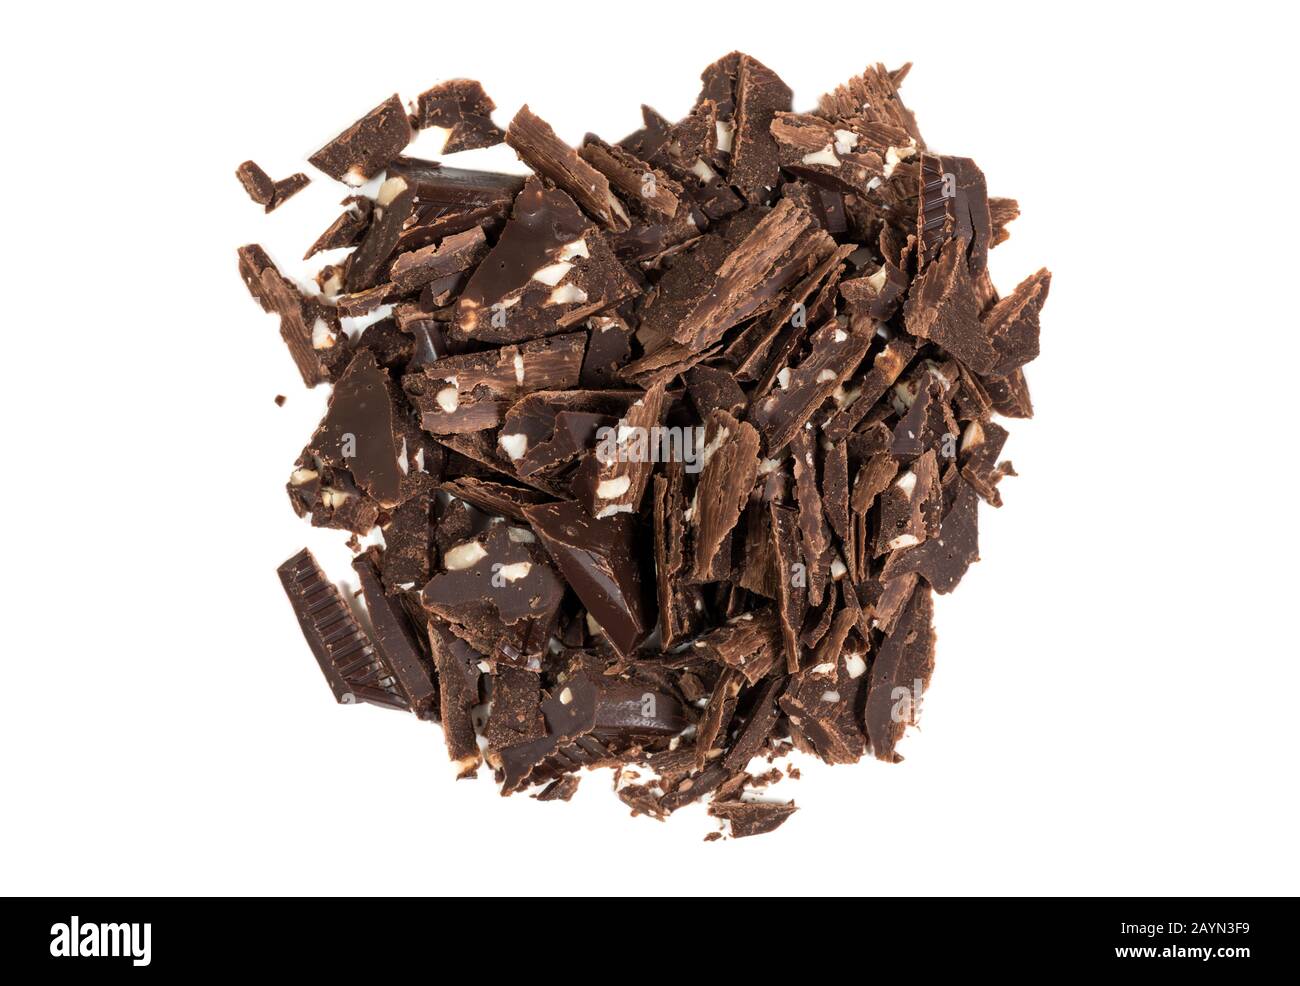 Pila de virutas de chocolate picado y molidas aisladas en blanco Foto de stock